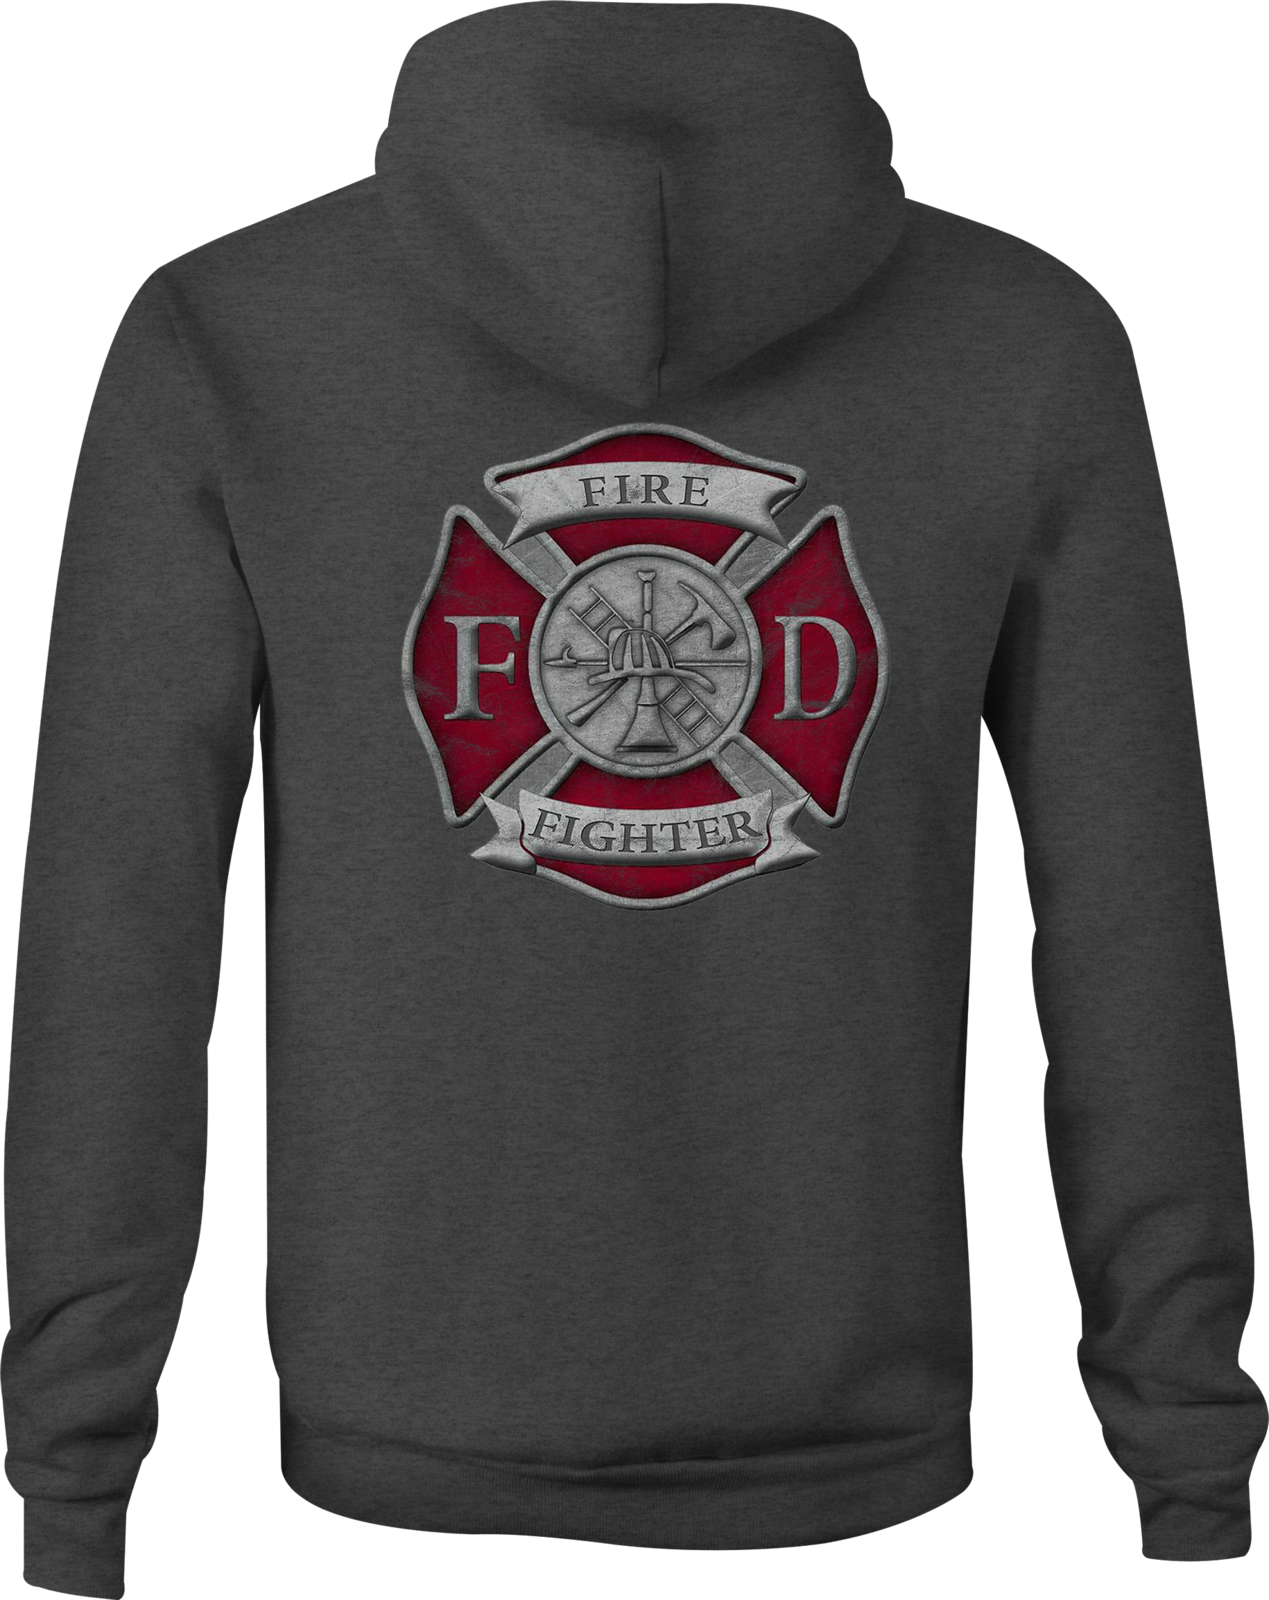 Firefighter Zip Up Hoodie Fire Dept for Women - Sweatshirts, Hoodies